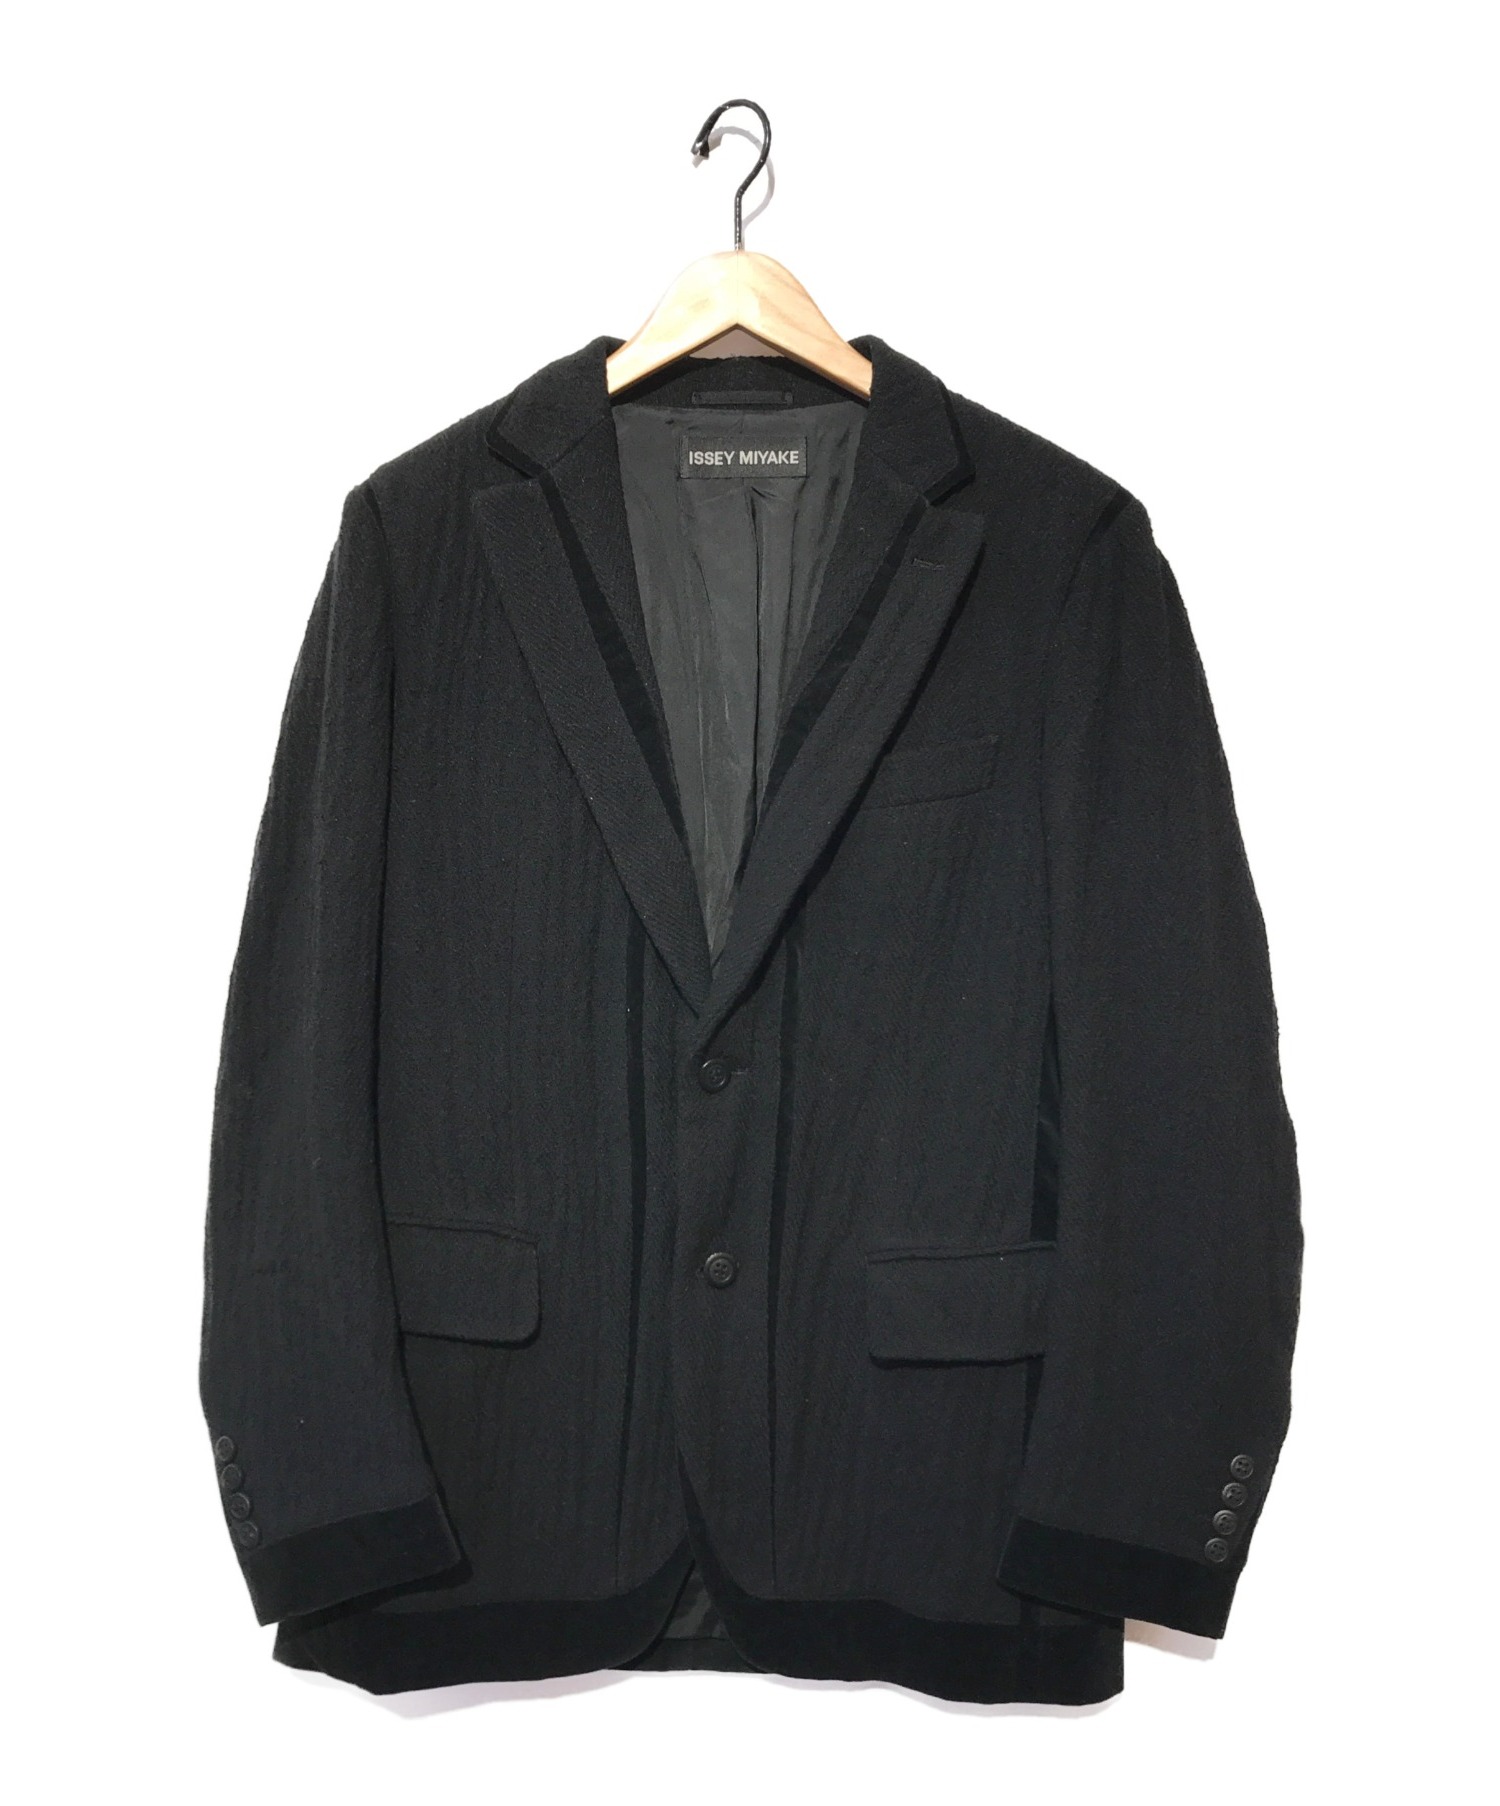 ISSEY MIYAKE (イッセイミヤケ) ベロアパイピングテーラードジャケット ブラック サイズ:2 ME63FD177